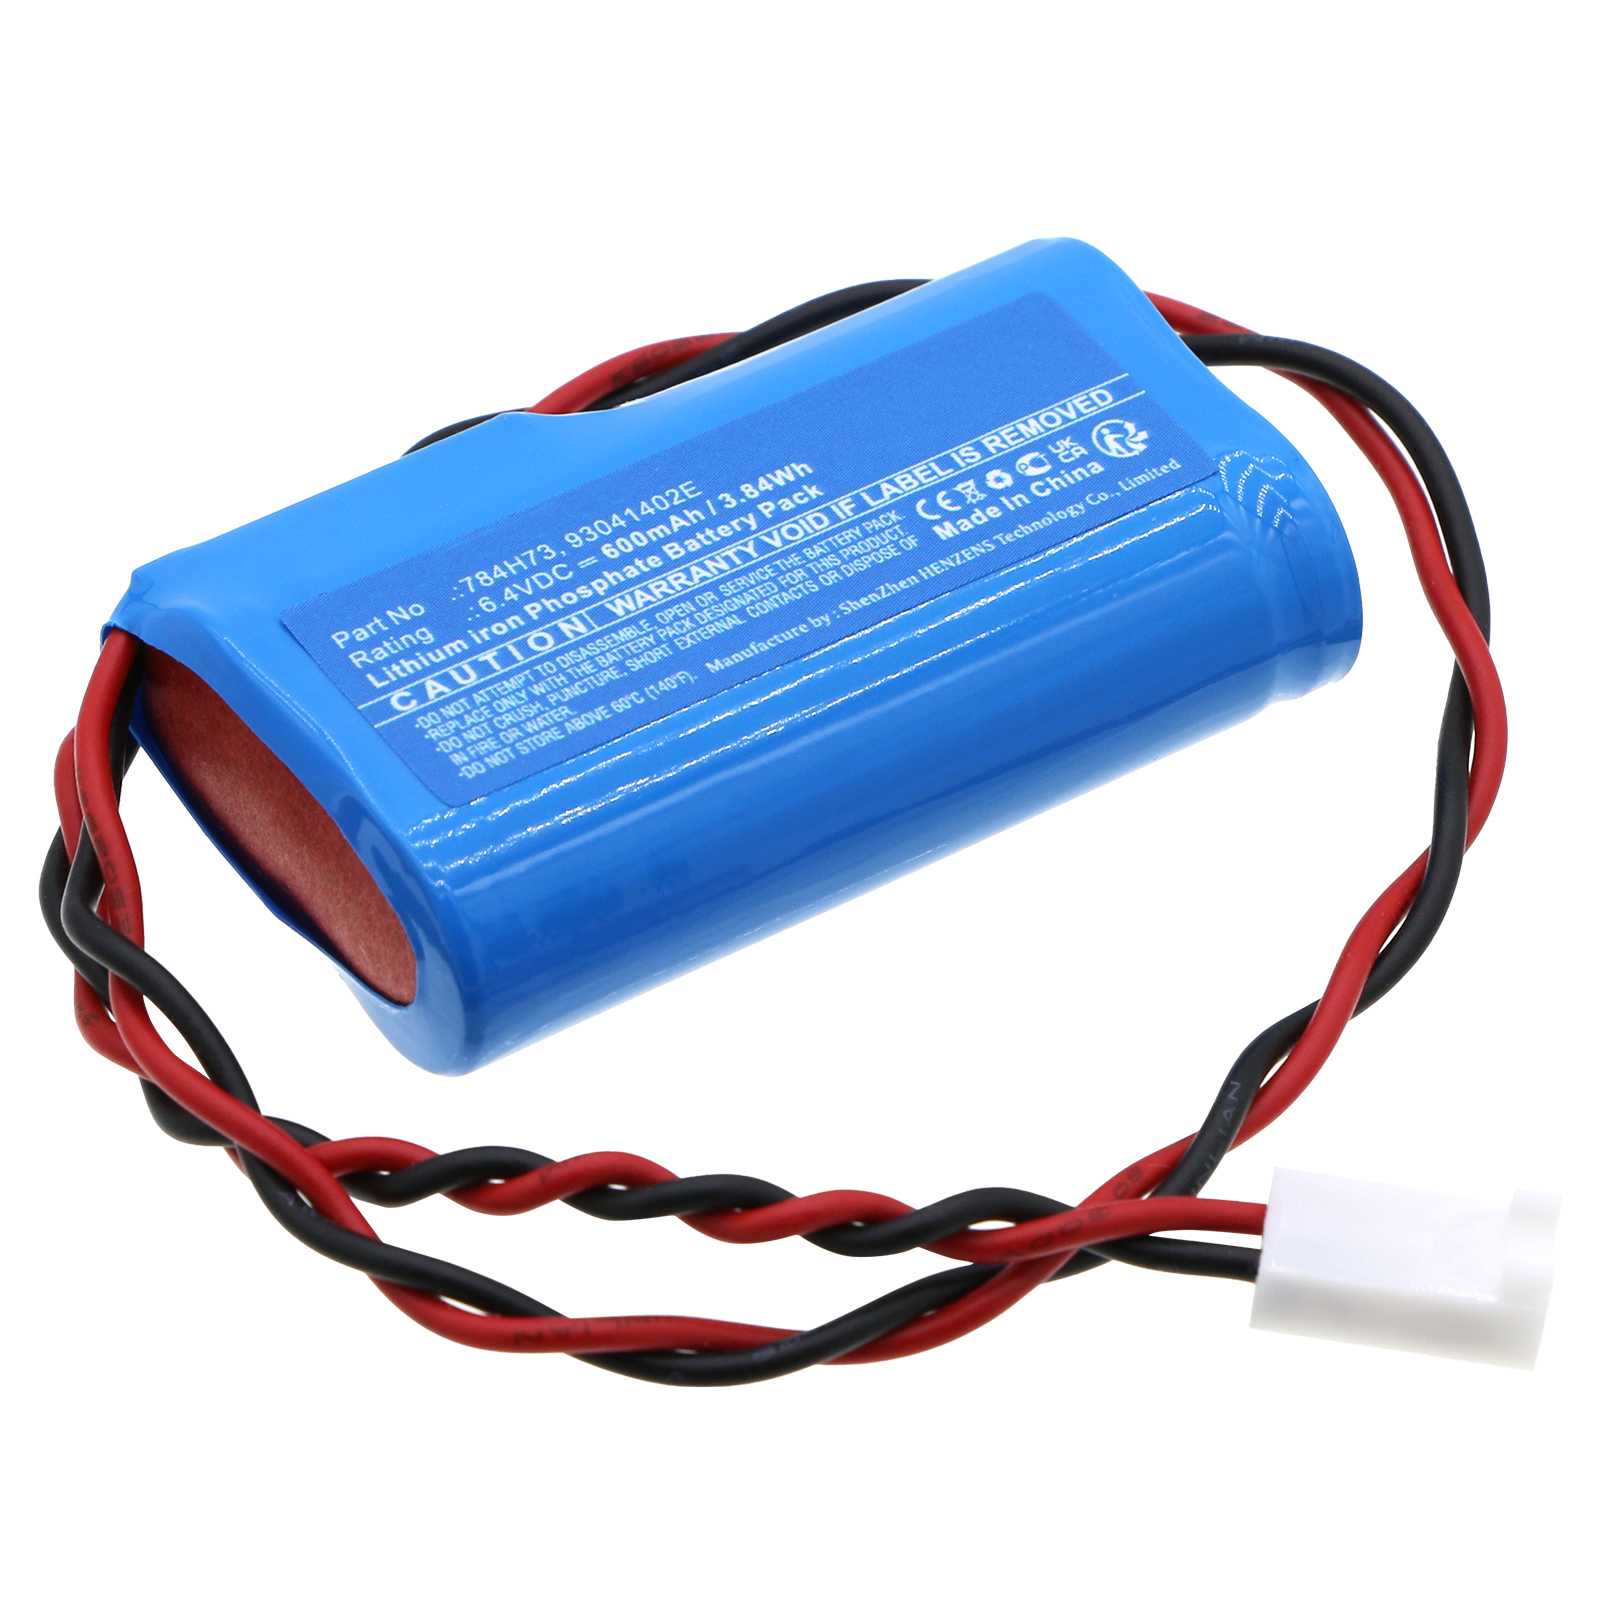 Synergy Digital Emergency Lighting Battery, Compatible with DUAL-LITE 784H73 Emergency Lighting Battery (LiFePO4, 6.4V, 600mAh)